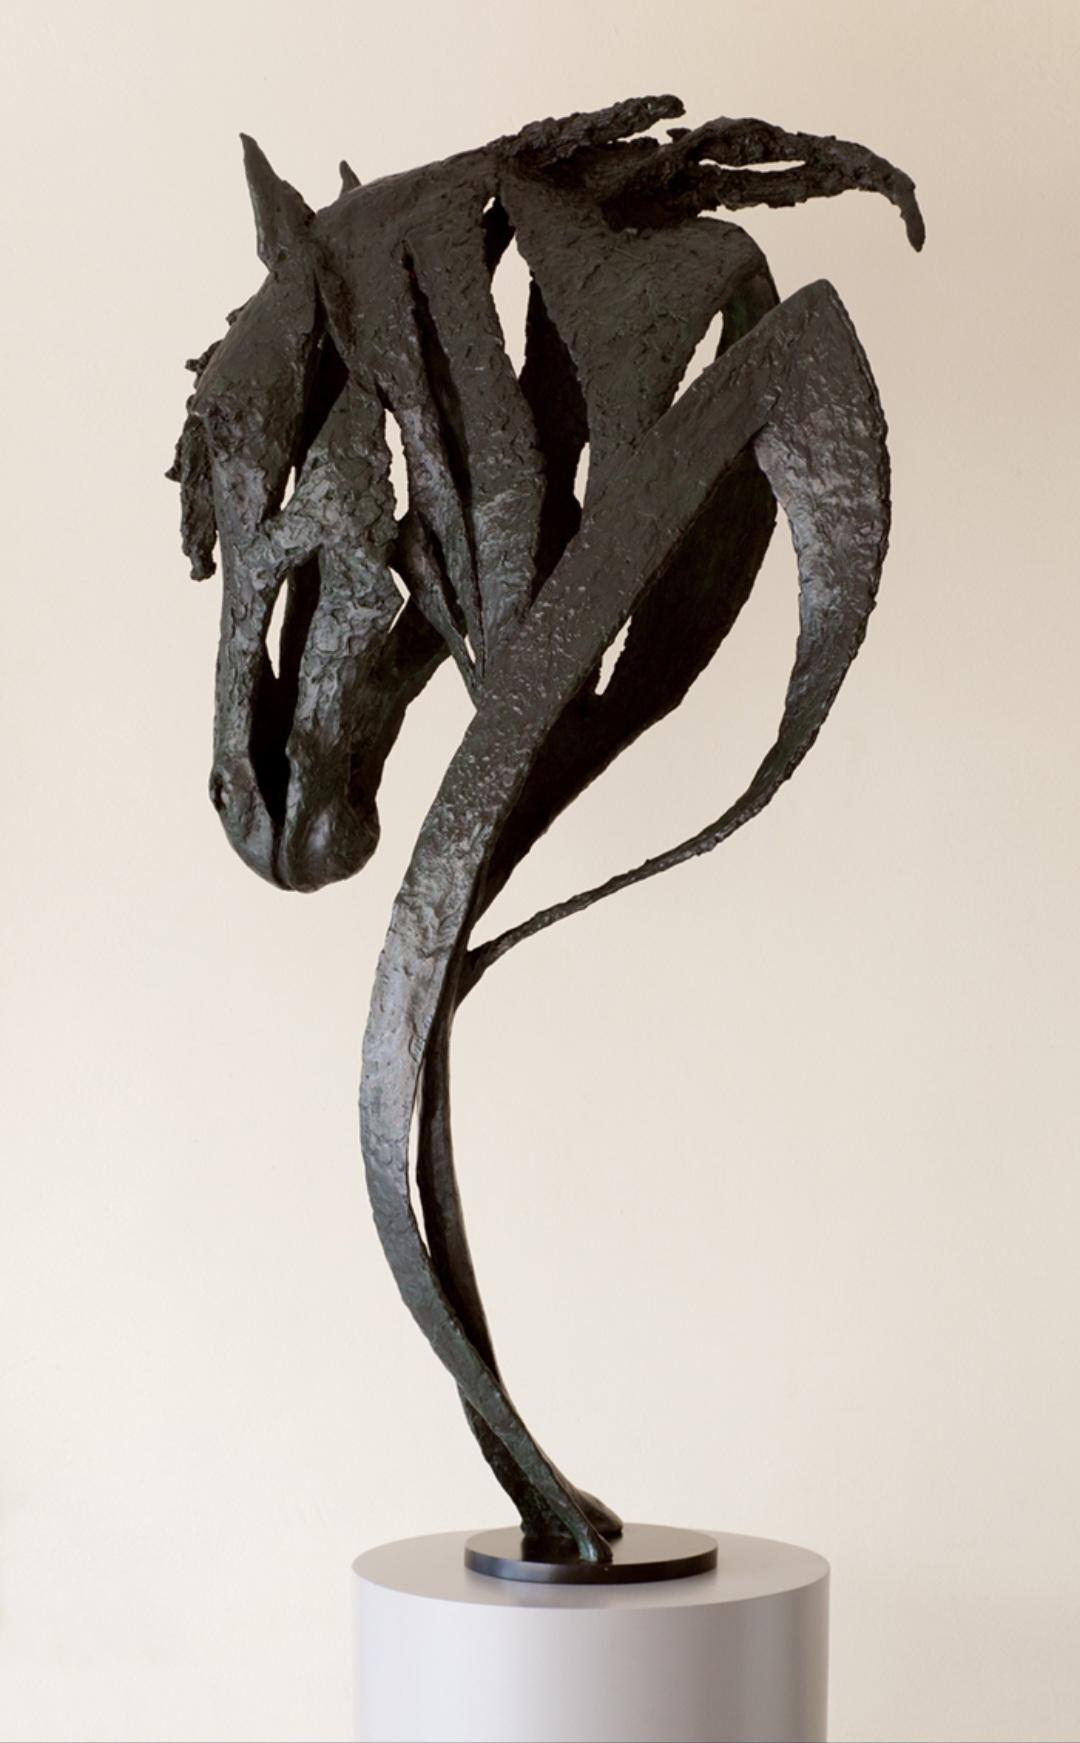 Antonio Da Silva Figurative Sculpture - Meandering - Abstract Horse